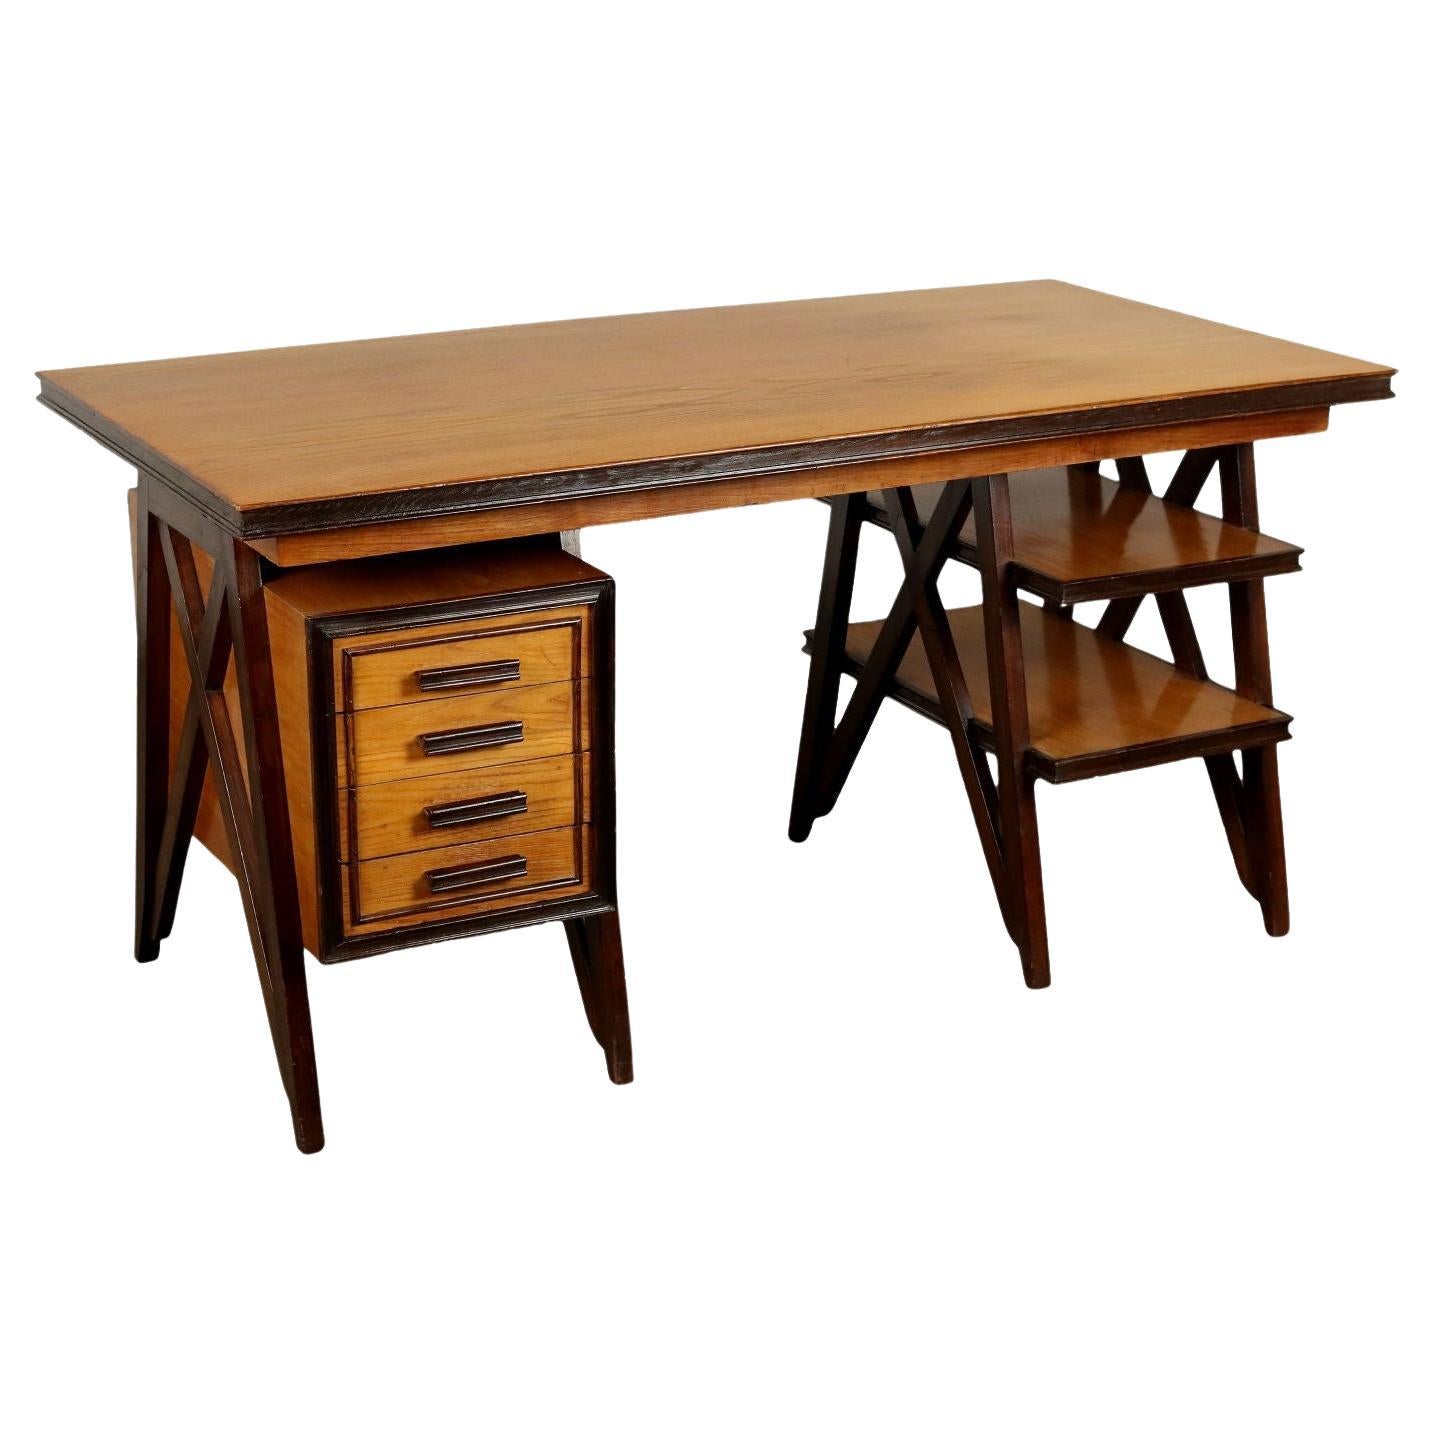 1950s beech and oak desk